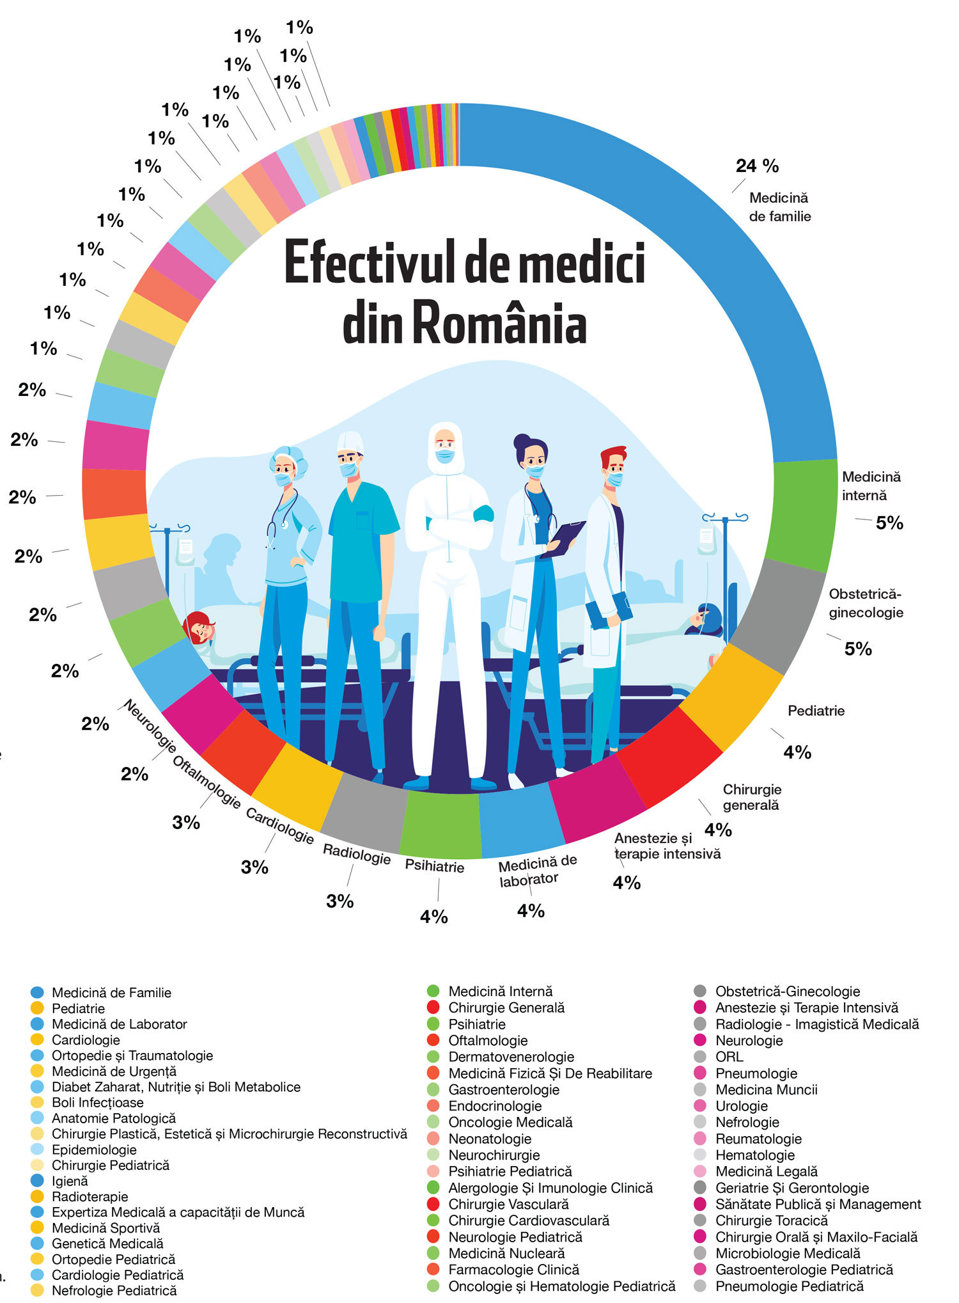 Supliment ZF Medical & Pharma. Resursa umană în sănătate. Cum arată distribuţia medicilor pe specialităţi în România? Medicina de familie, cea mai numeroasă. Deficitul cel mai mare este pe specialităţile de pediatrie